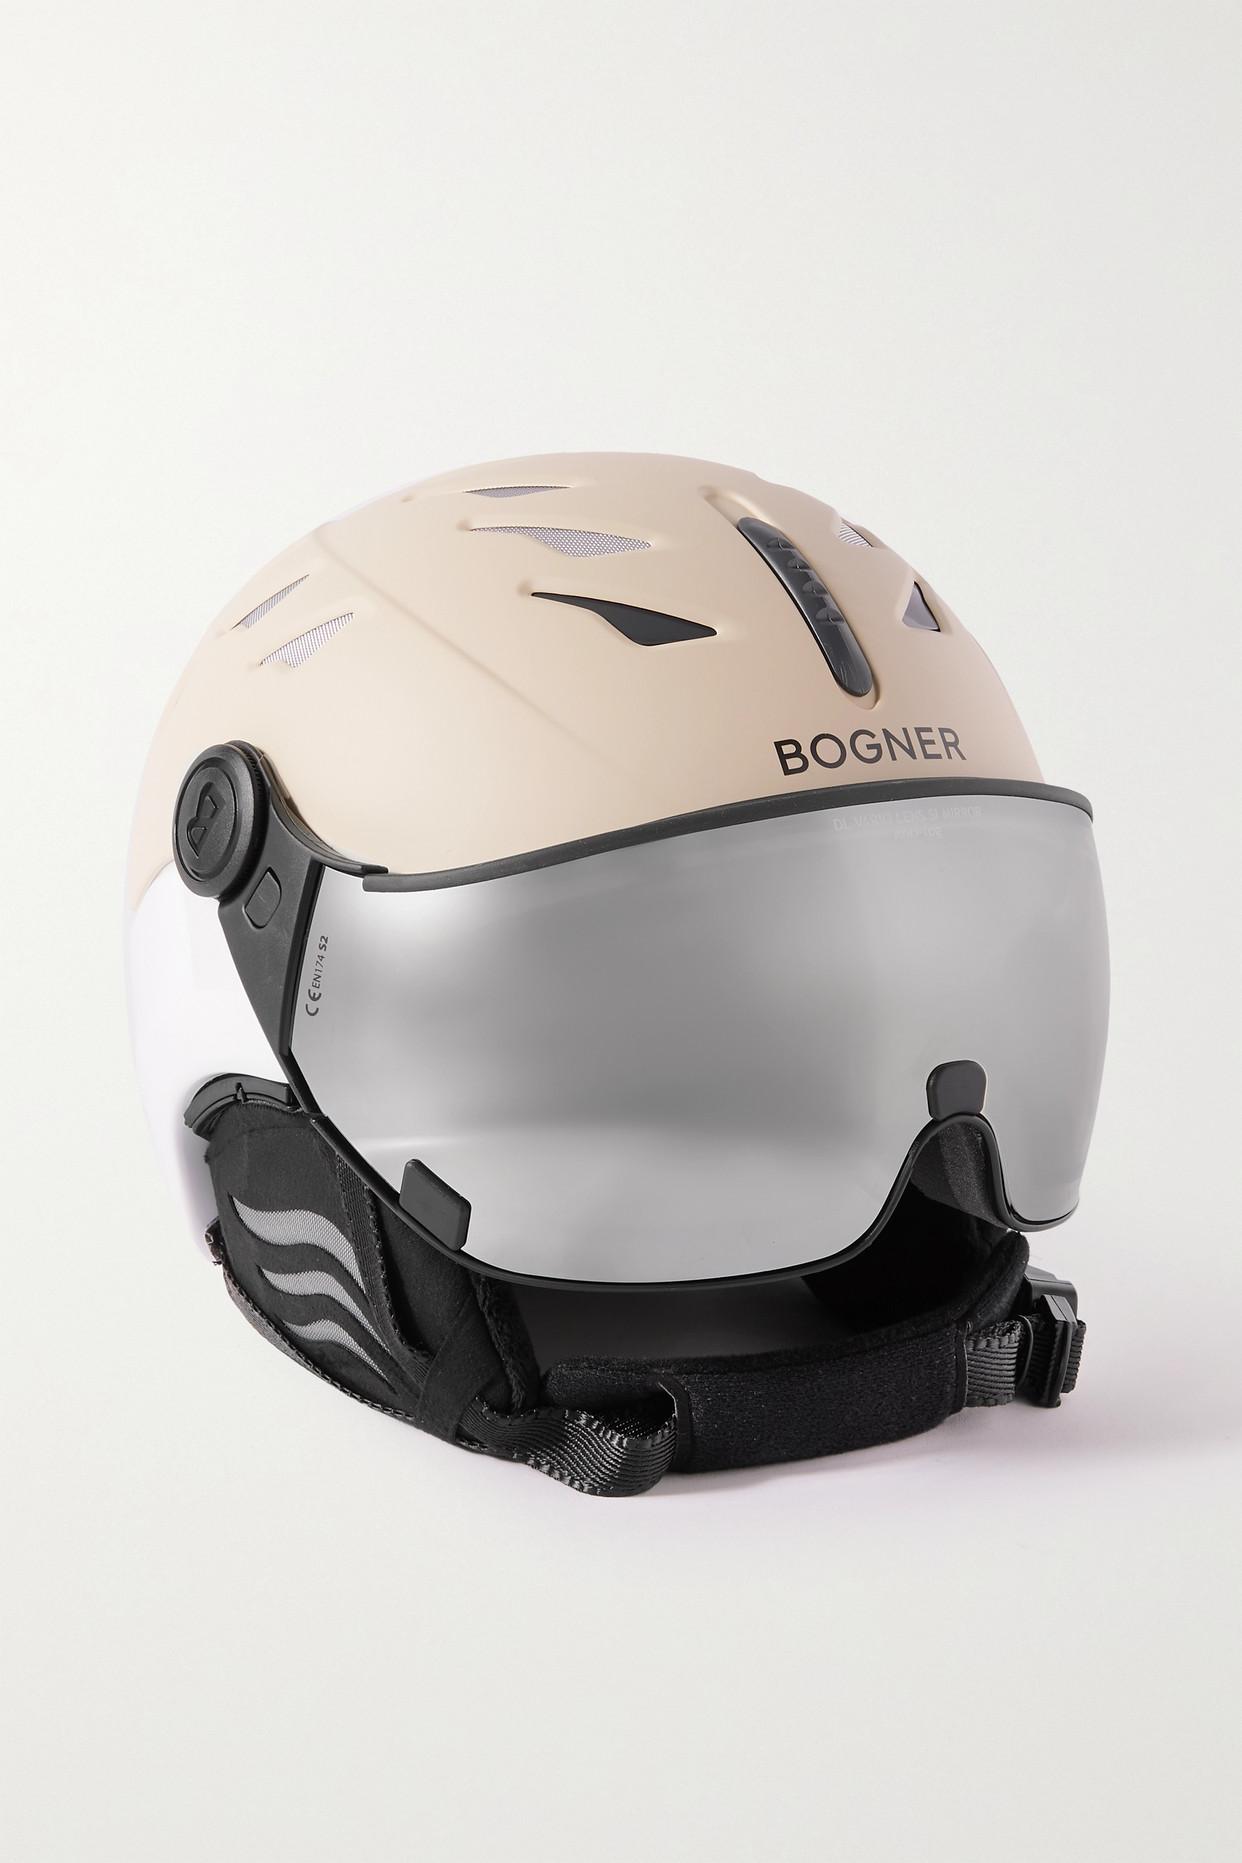 Bogner St. Moritz Ski Helmet | Lyst